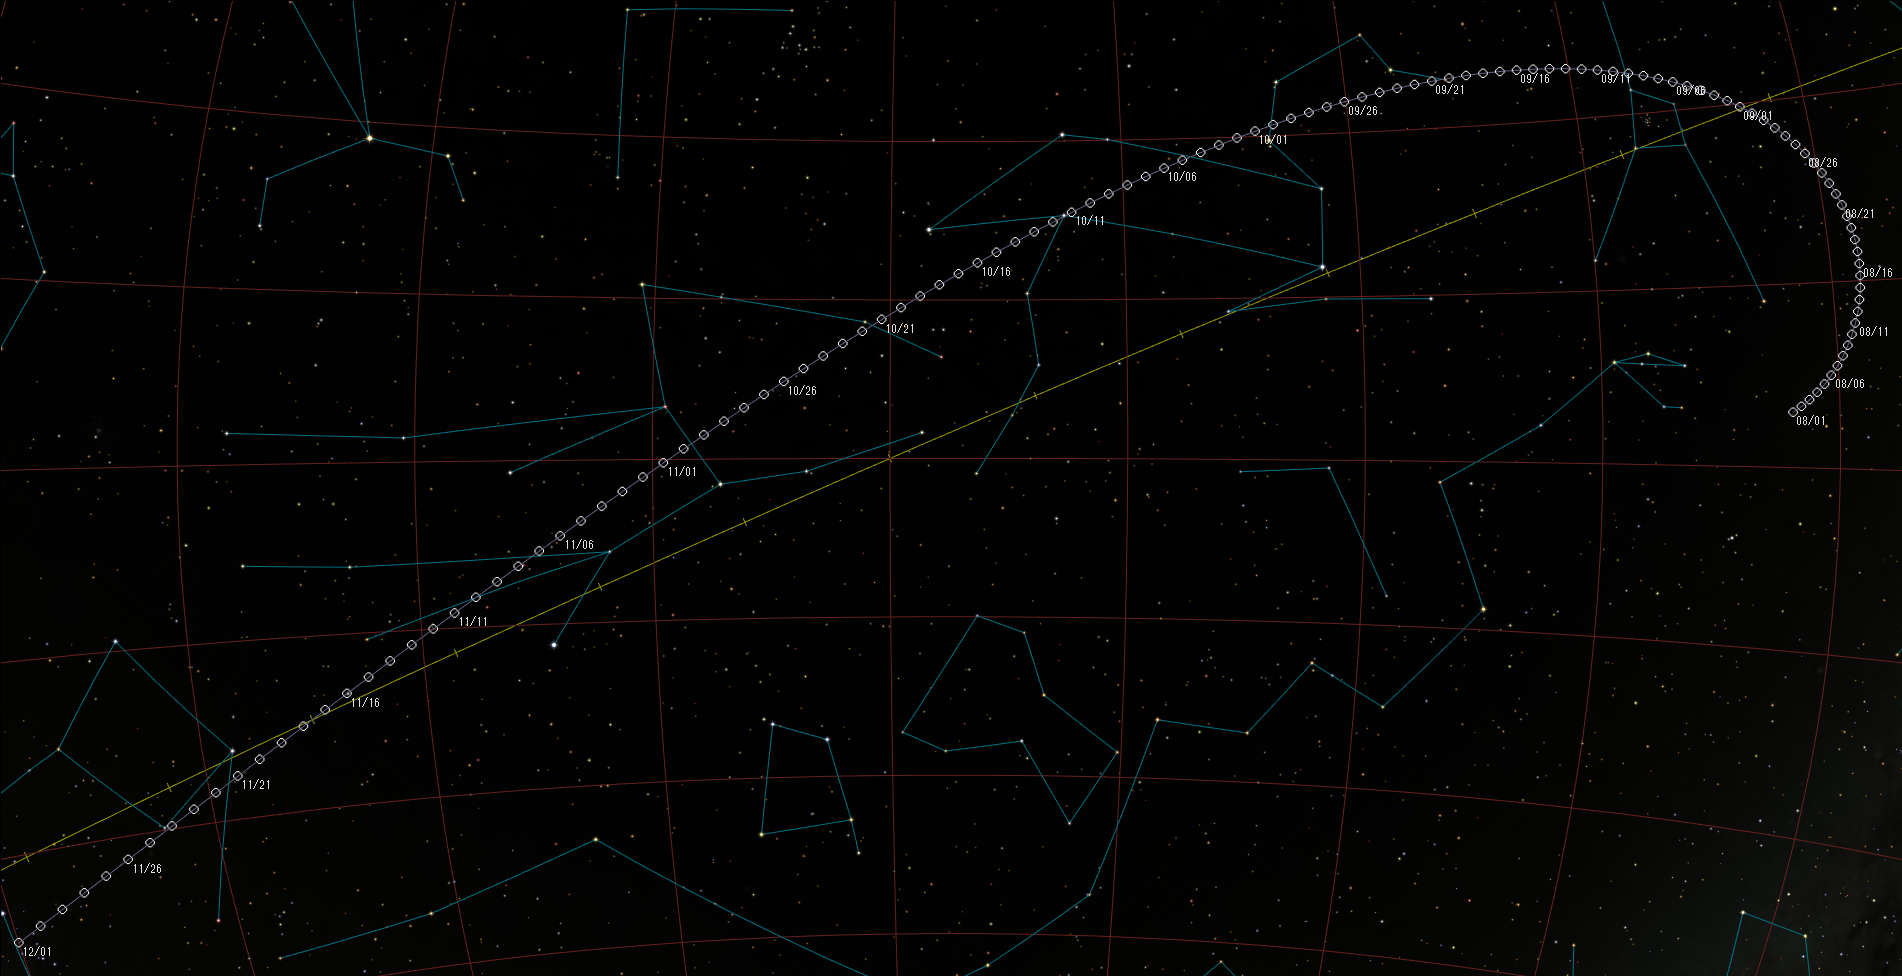 小惑星'Aylo'chaxnim(594913／2020AV2)